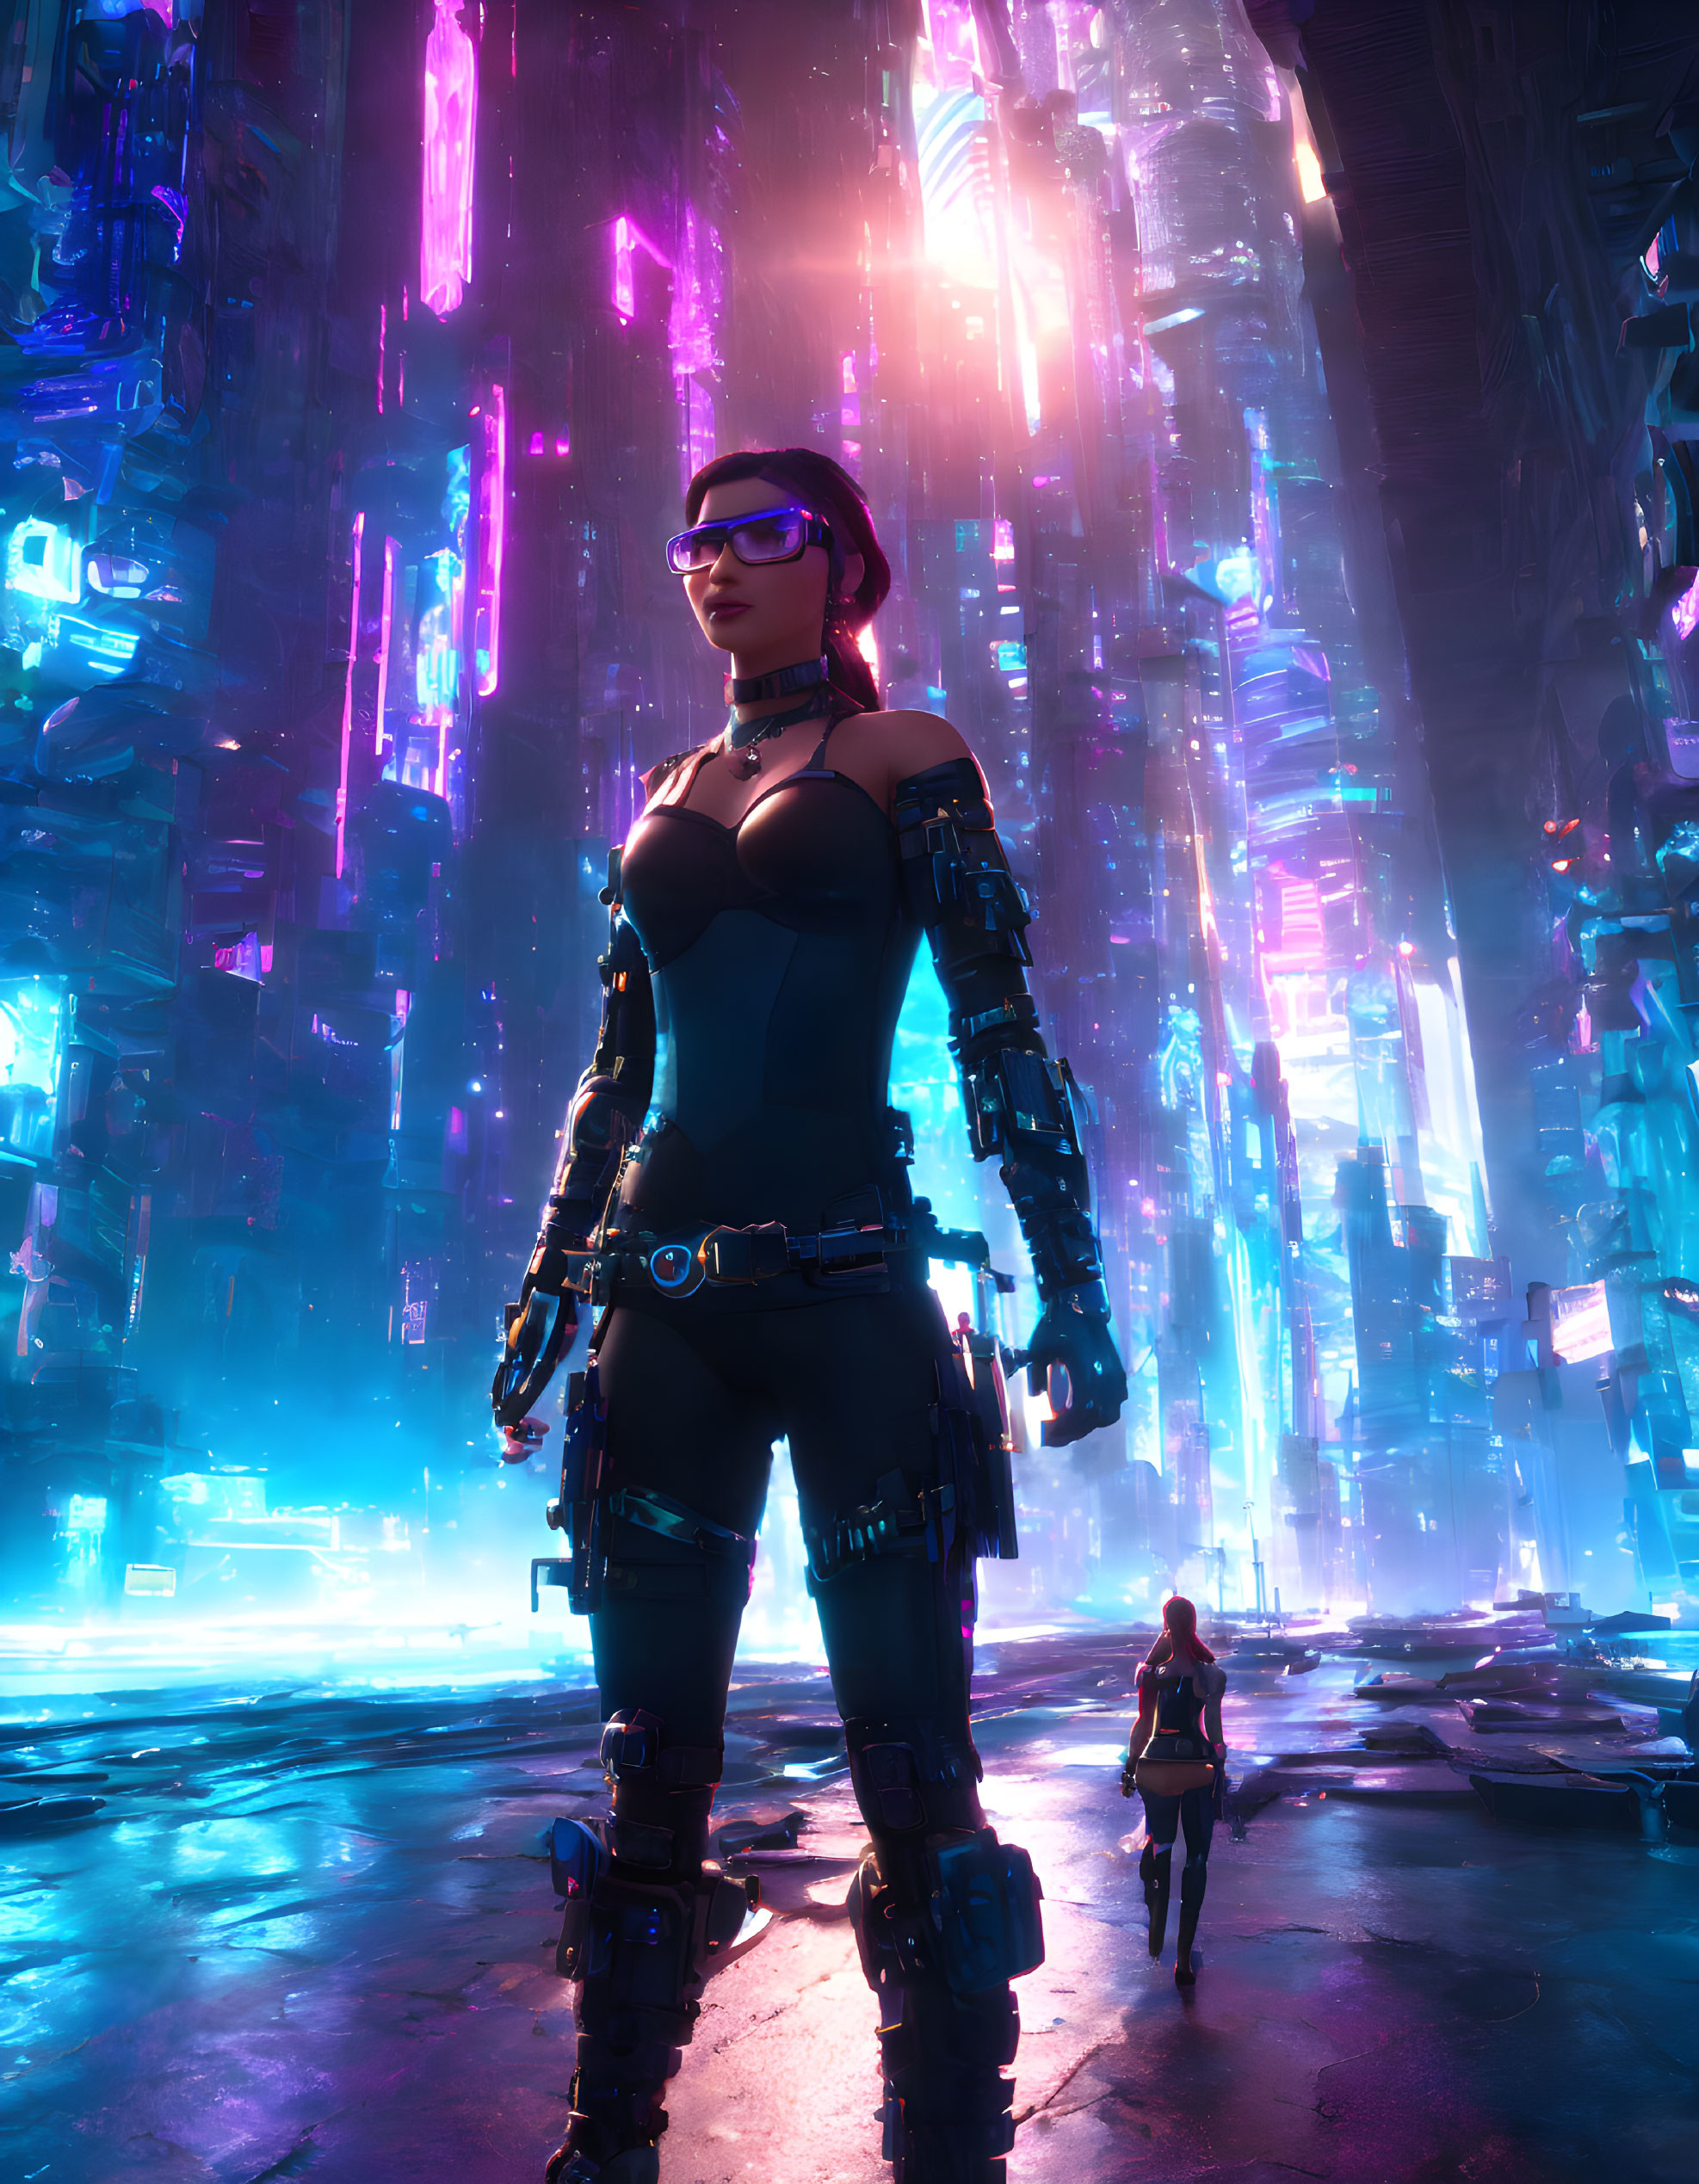 Cybernetic Arm Woman in Neon-lit Futuristic Cityscape